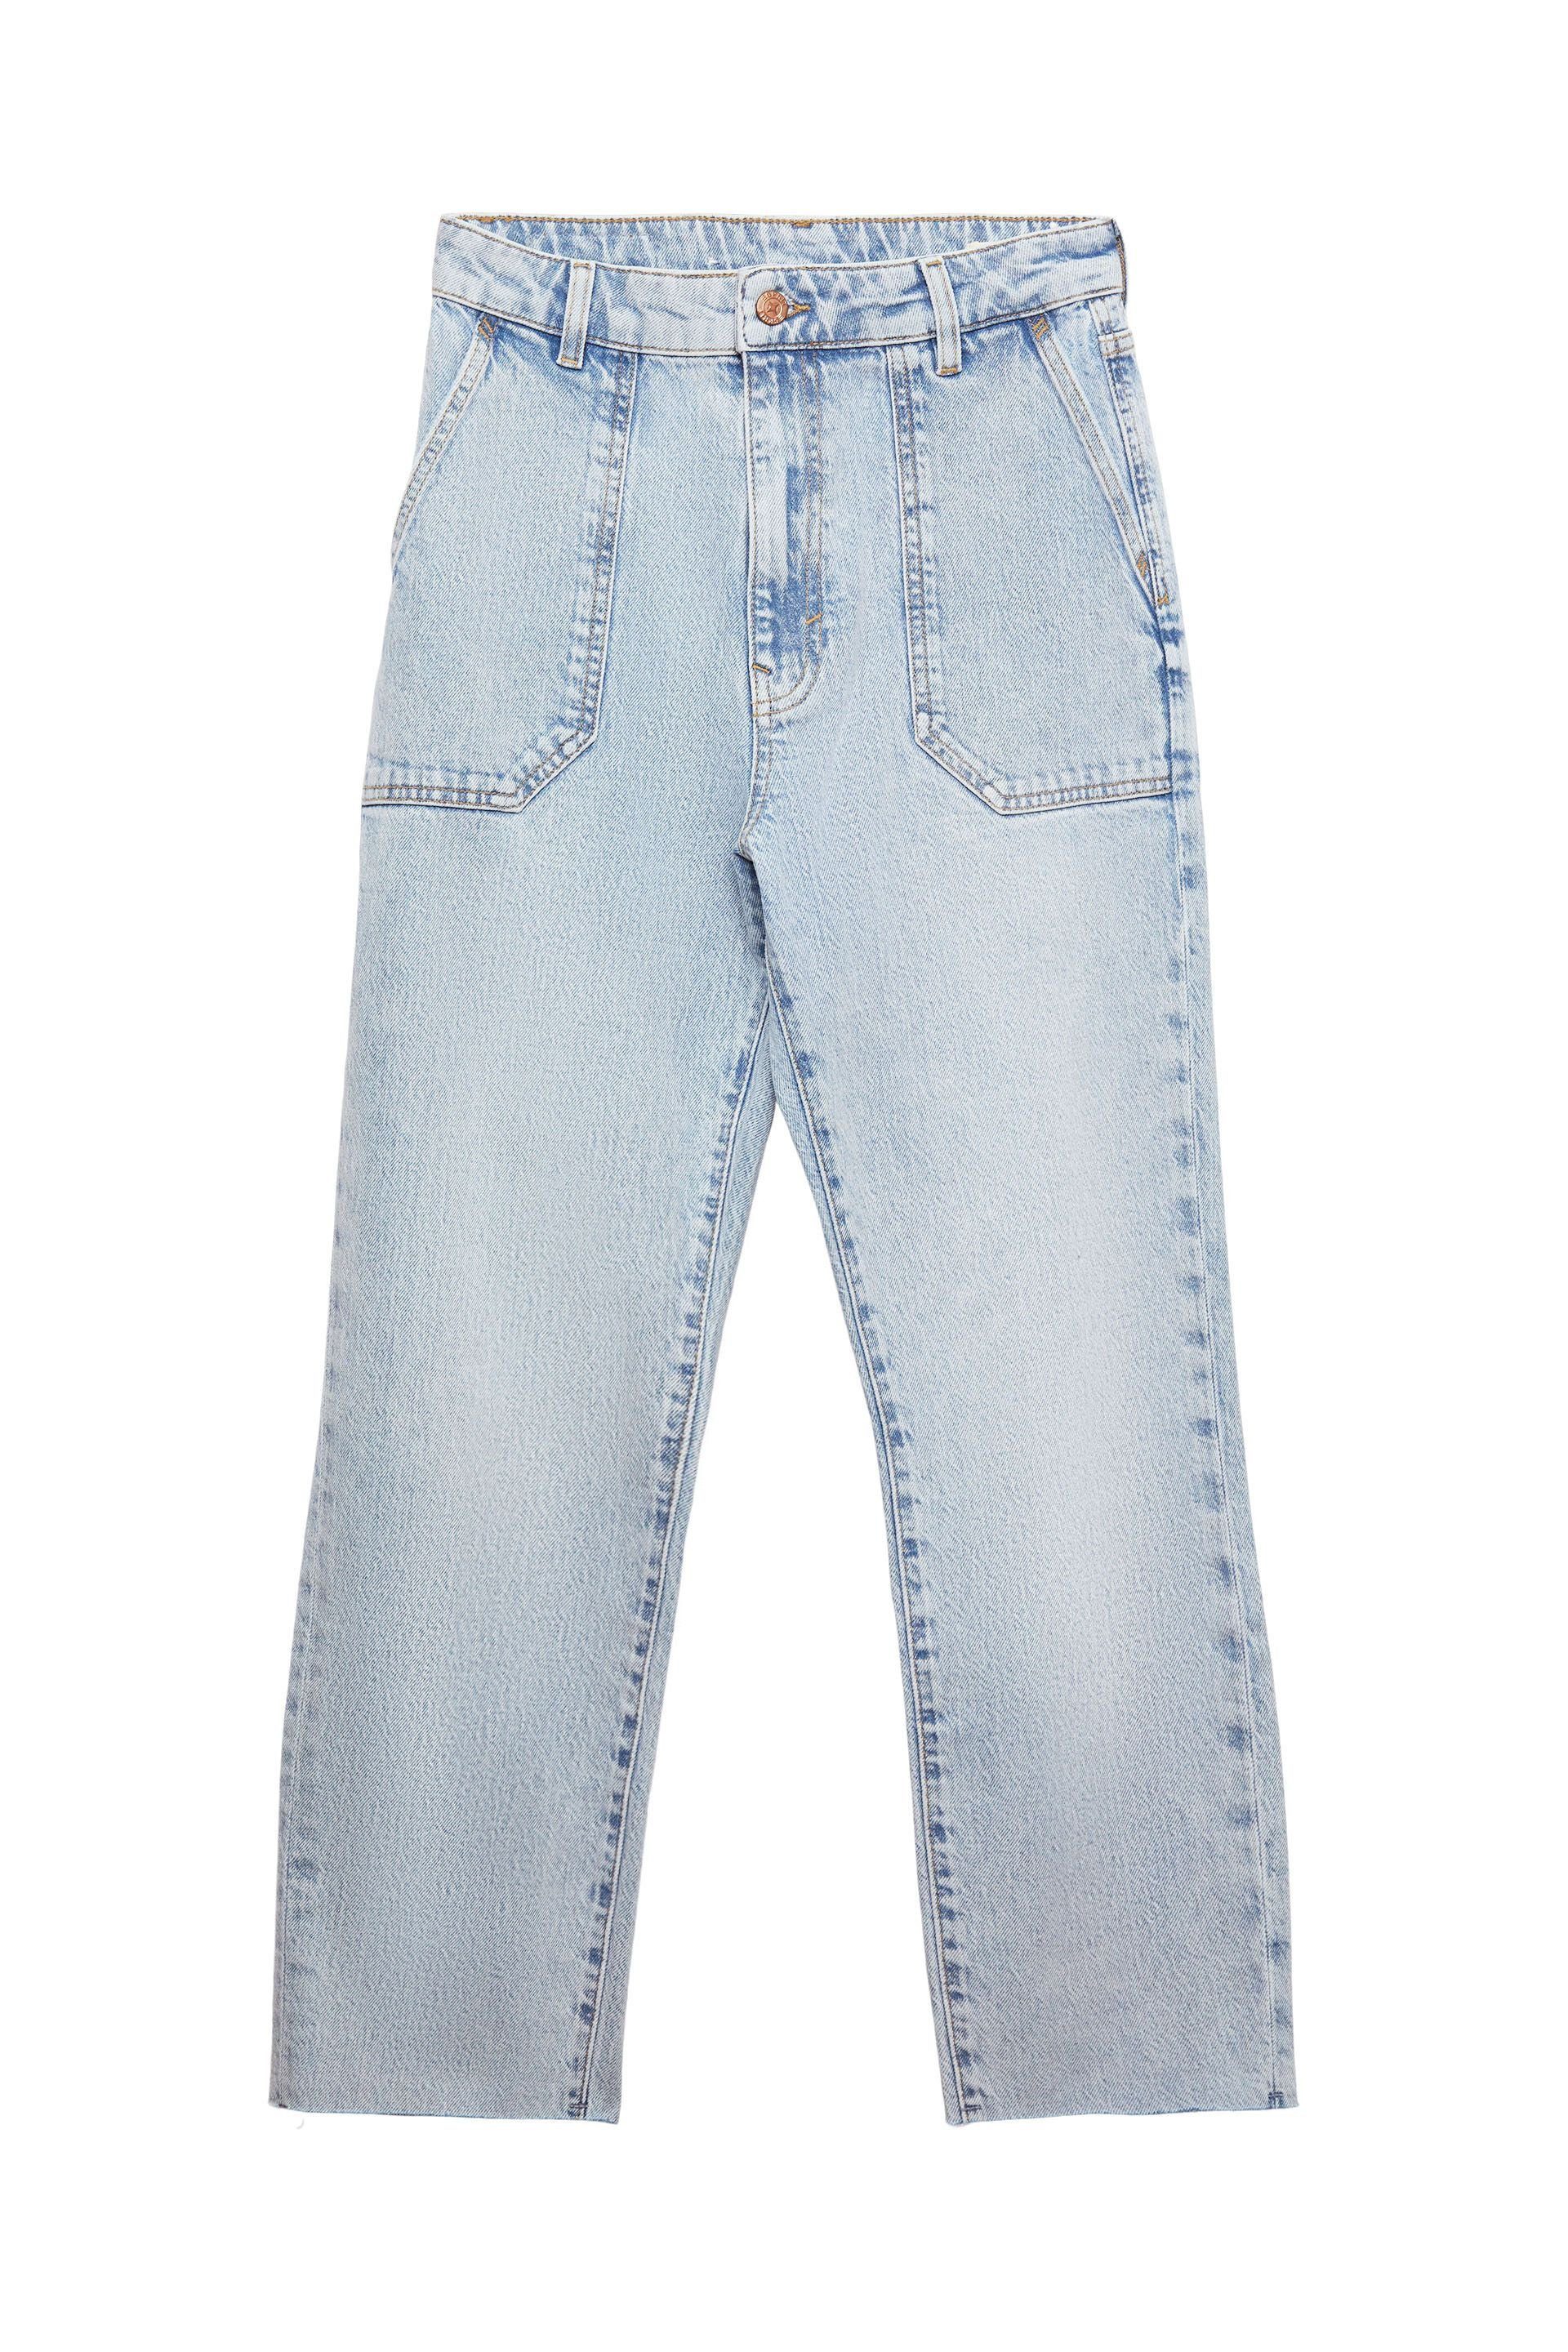 edc by Esprit 7/8-Jeans Pants denim cropped